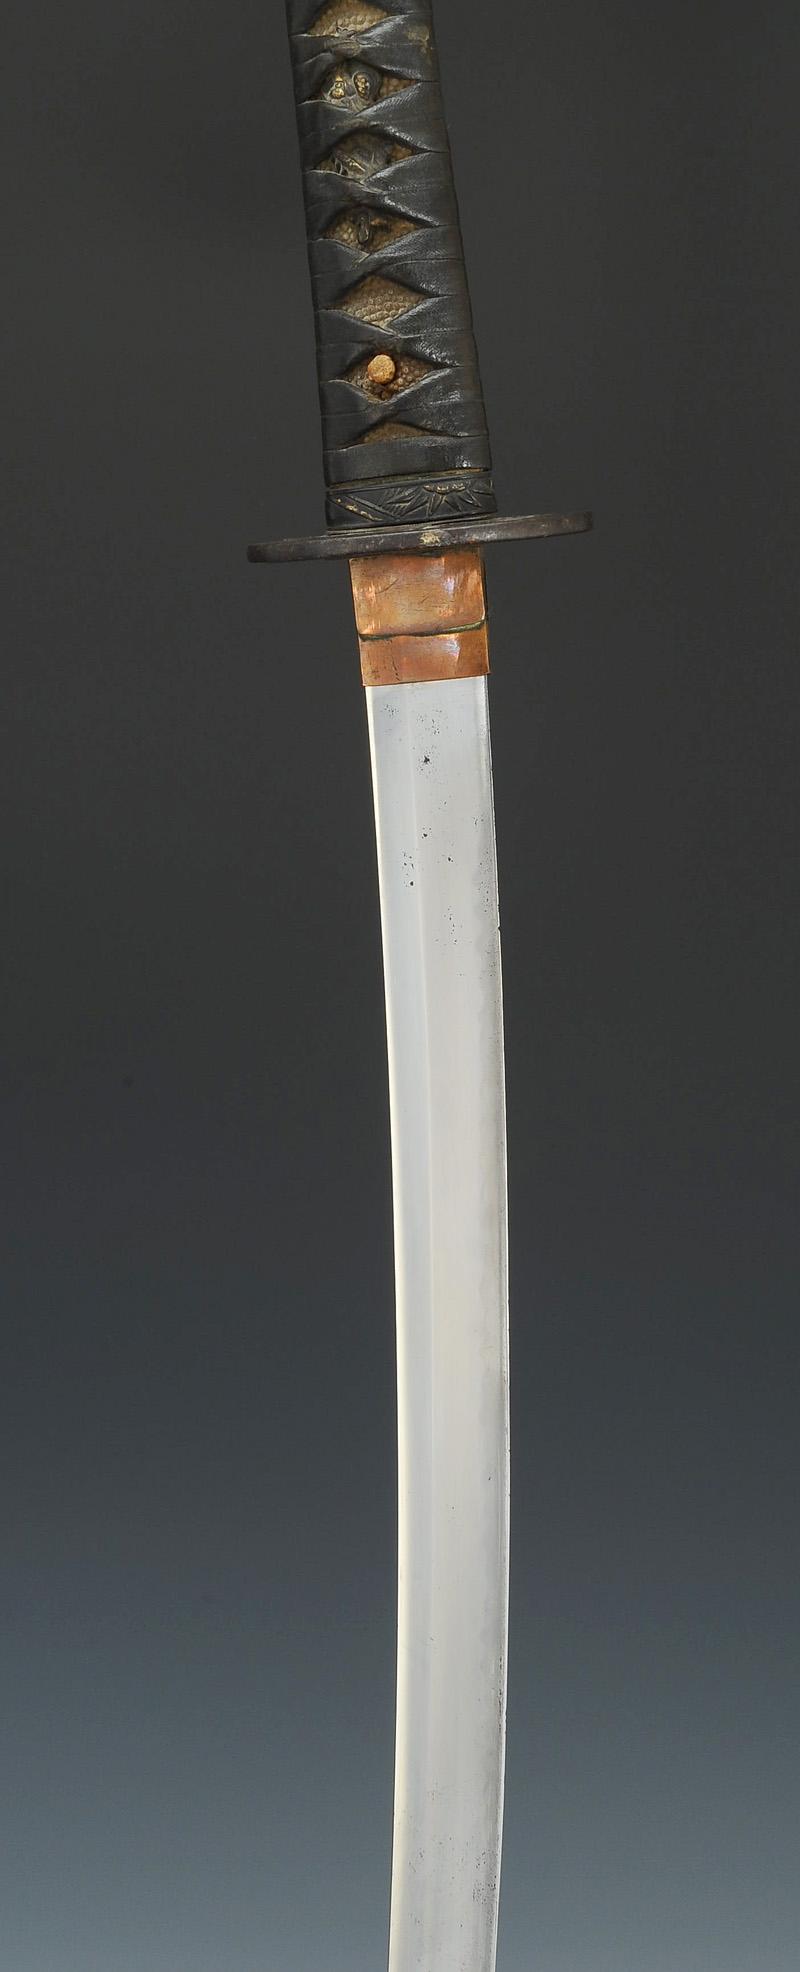 KATANA SABRE JAPONAIS (Longueur 75 cm)